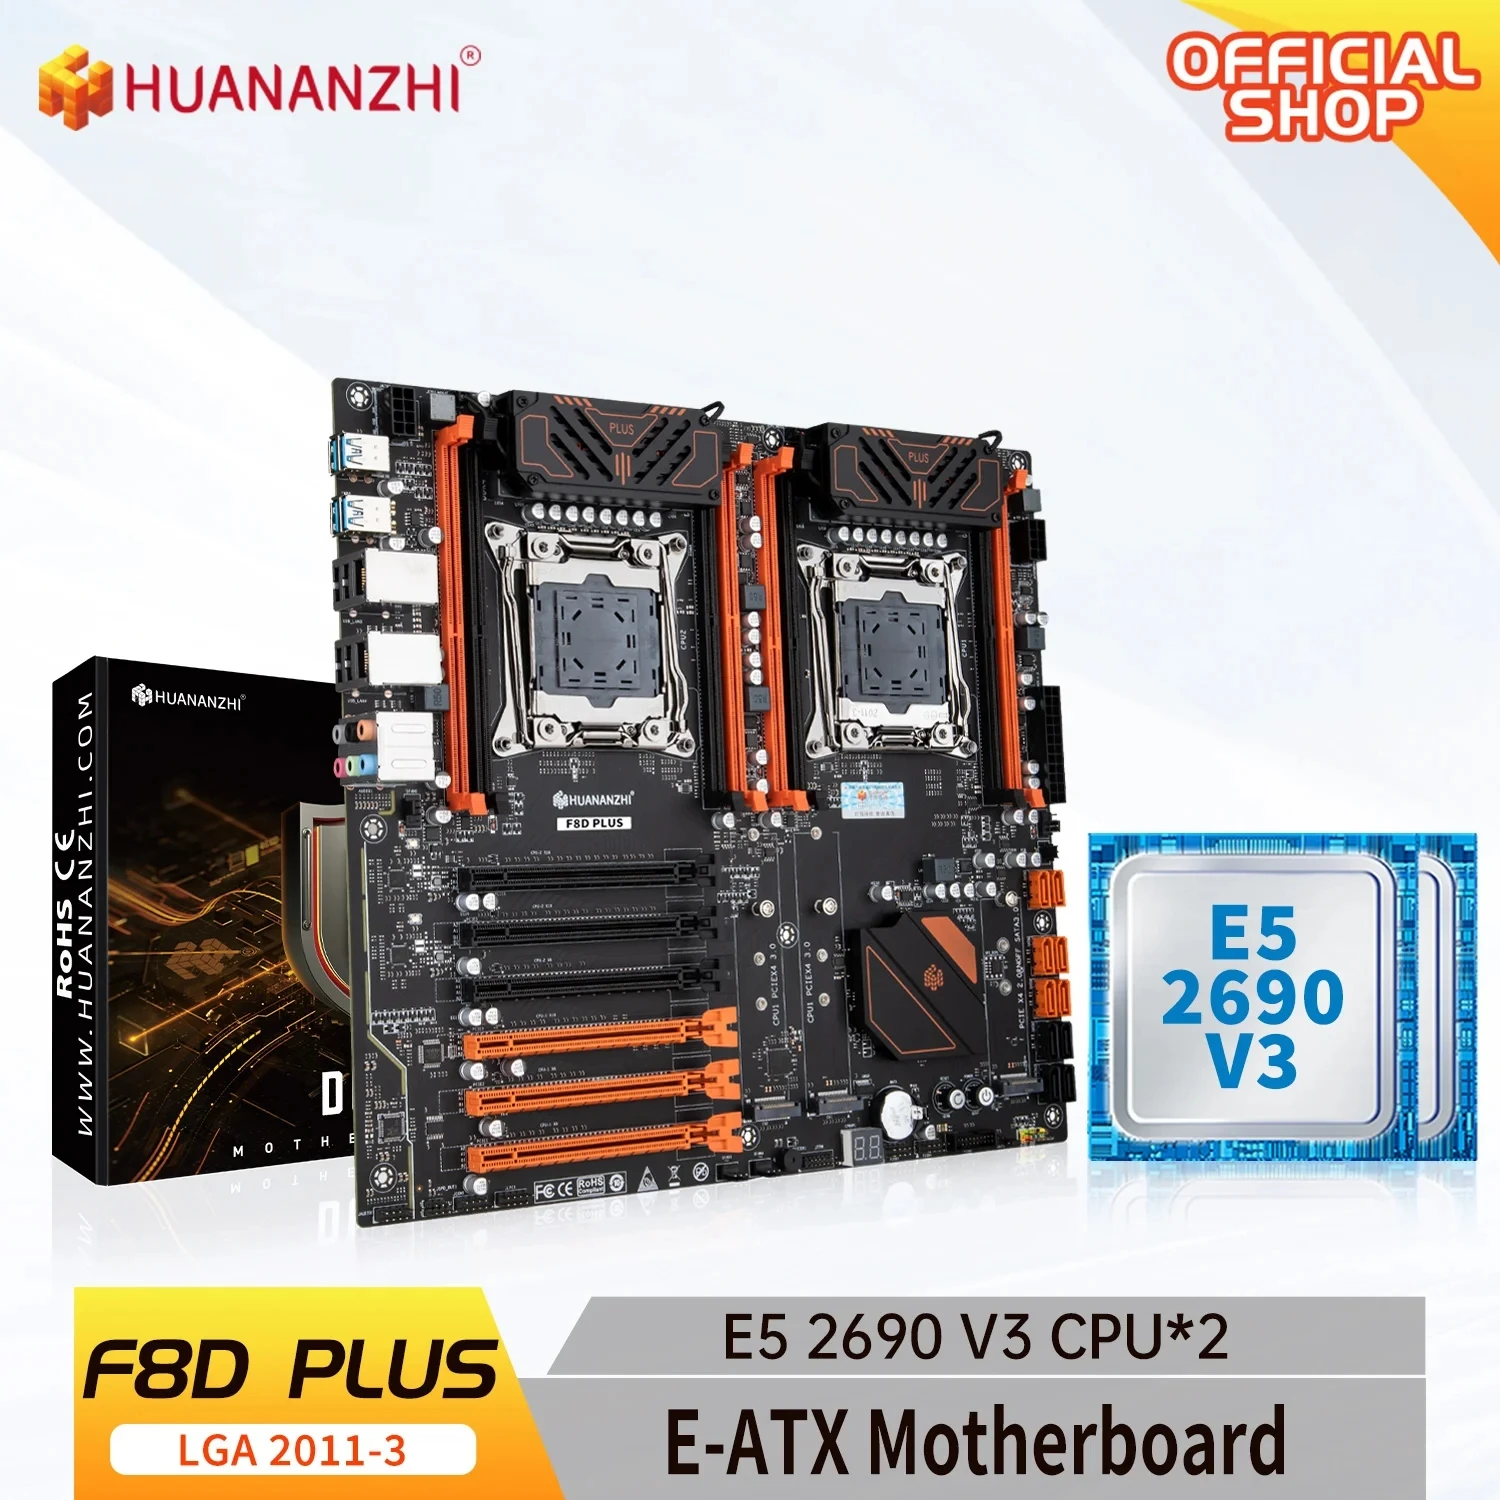 Материнская плата HUANANZHI X99 F8D PLUS LGA 2011-3 XEON X99 с двойным процессором Intel с комбинированным комплектом E5 2690 V3 * 2 поддерживает DDR4 RECC NON-ECC0